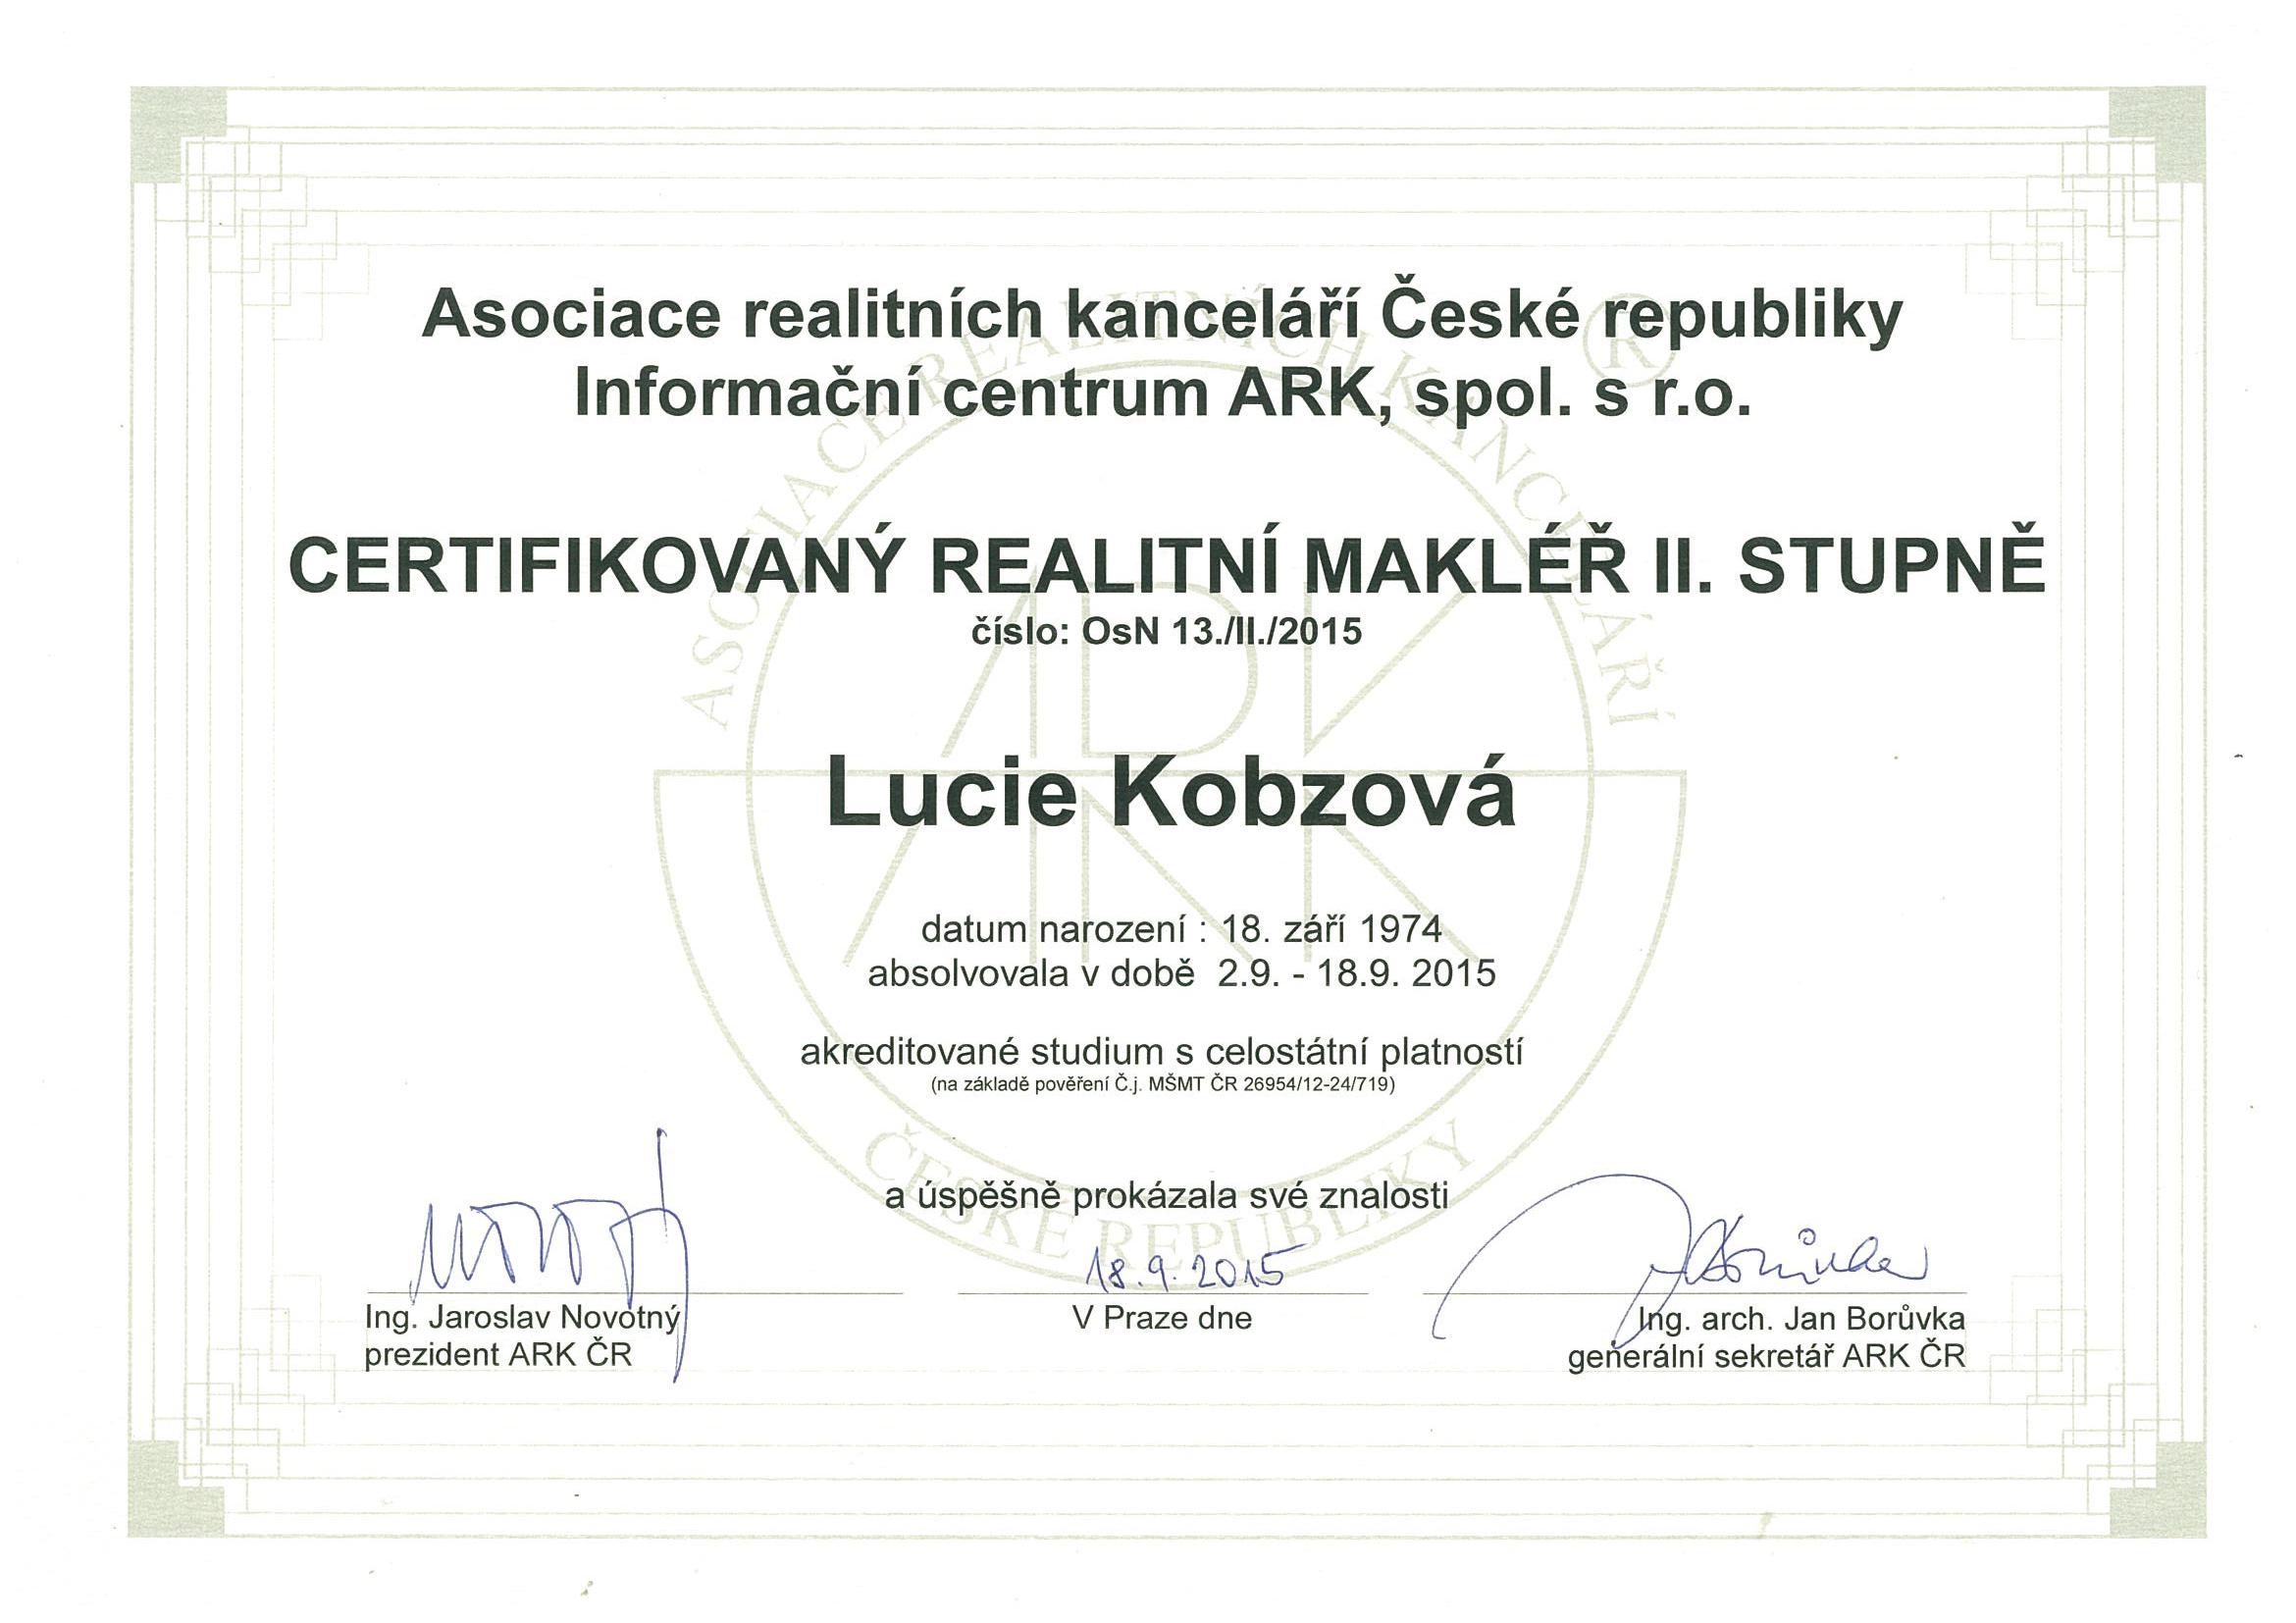 Certifikovaný realitní makléř II. stupně - Lucie Kobzová